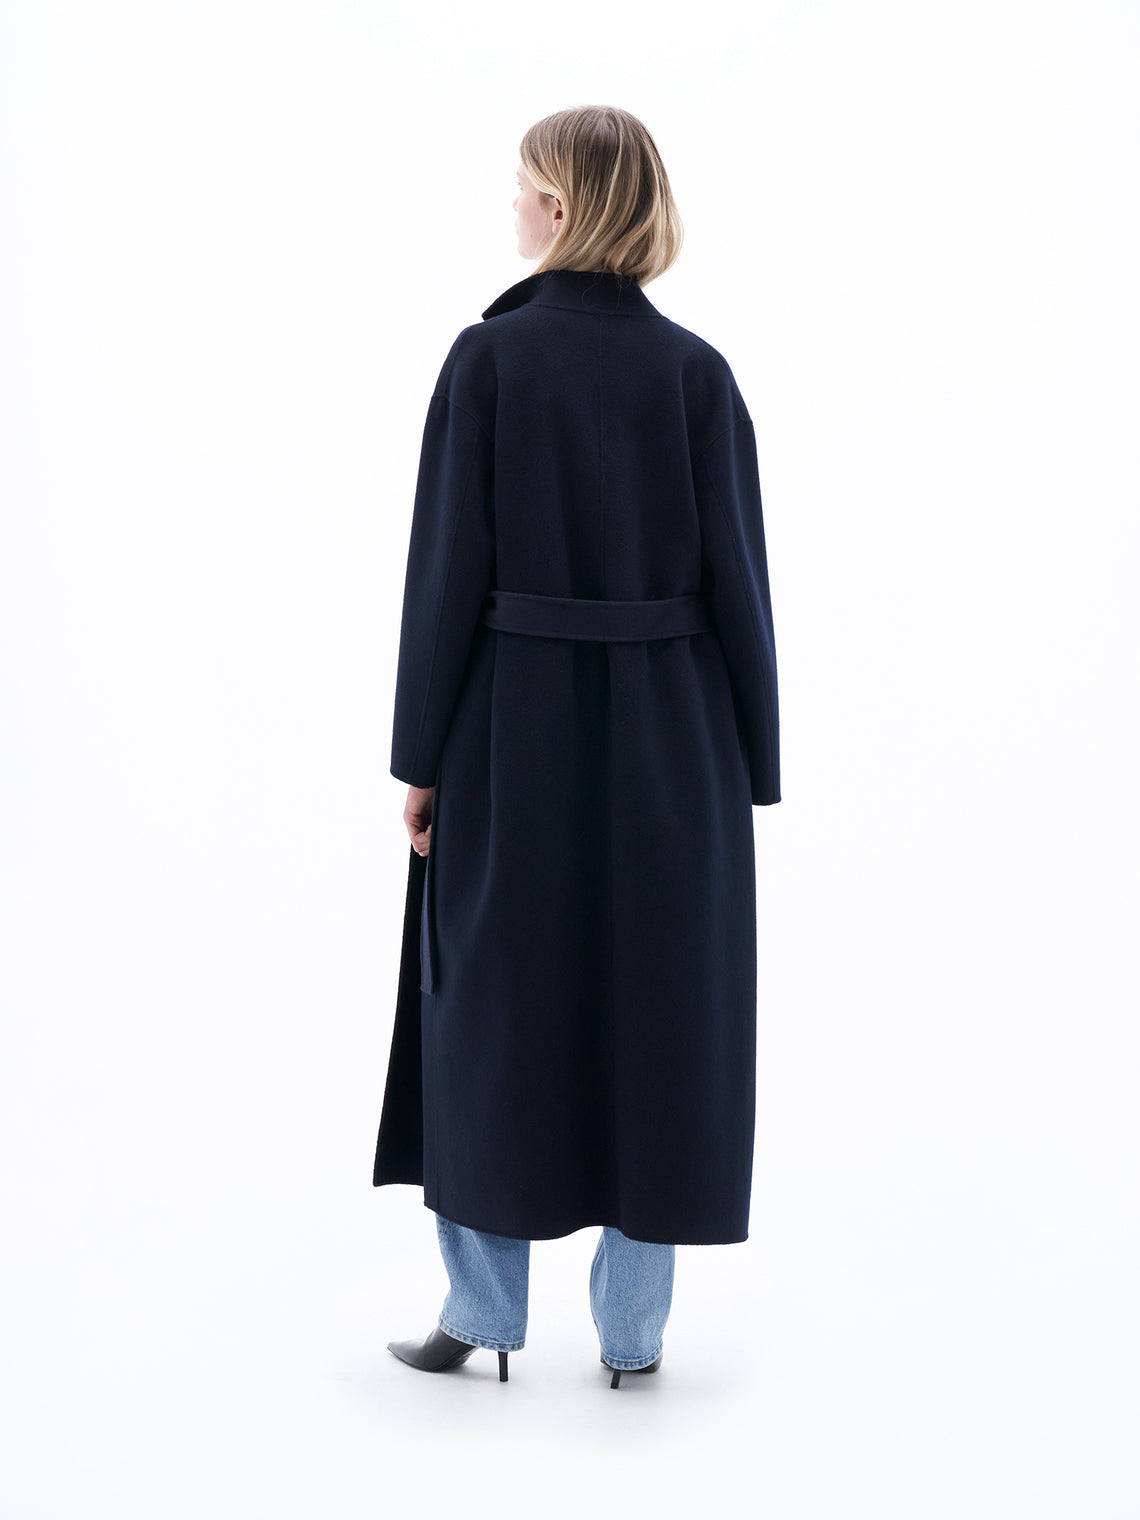 Alexa coat by Filippa K in dark blue